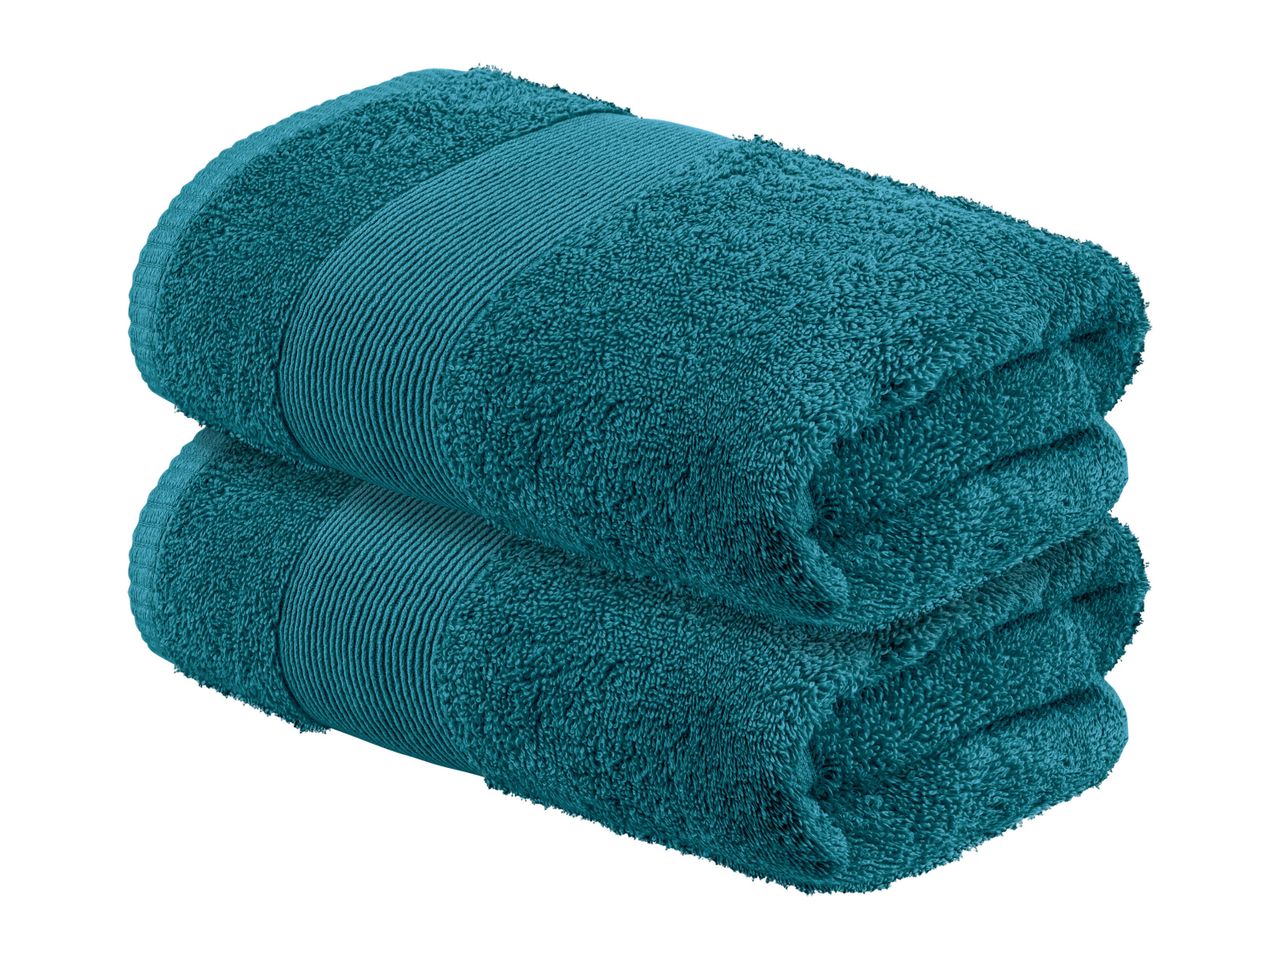 Asciugamano , prezzo 7.99 EUR  
Asciugamano  50x100 cm, 2 pezzi  
-  Puro cotone